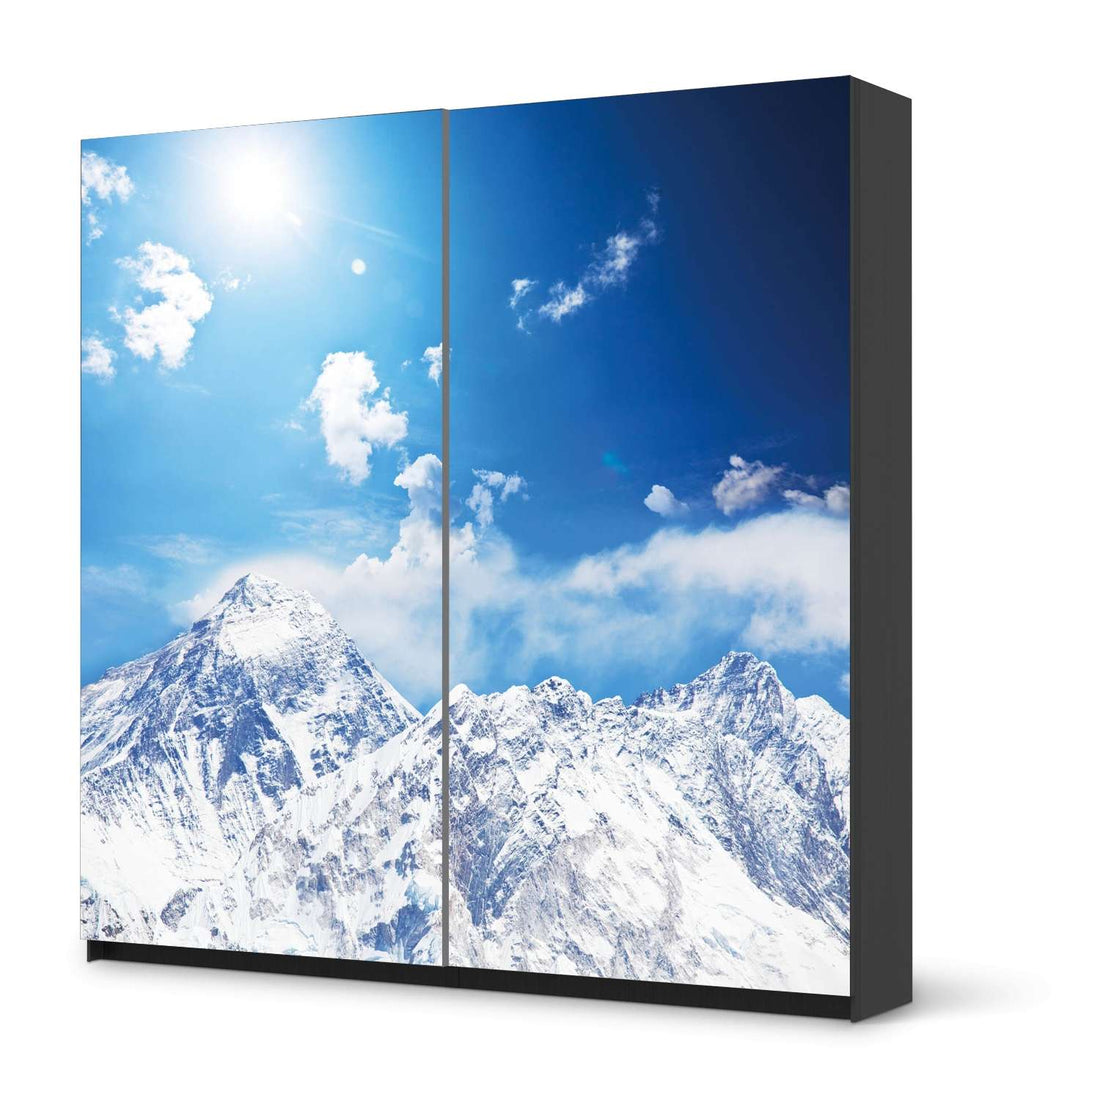 Möbel Klebefolie Everest - IKEA Pax Schrank 201 cm Höhe - Schiebetür - schwarz